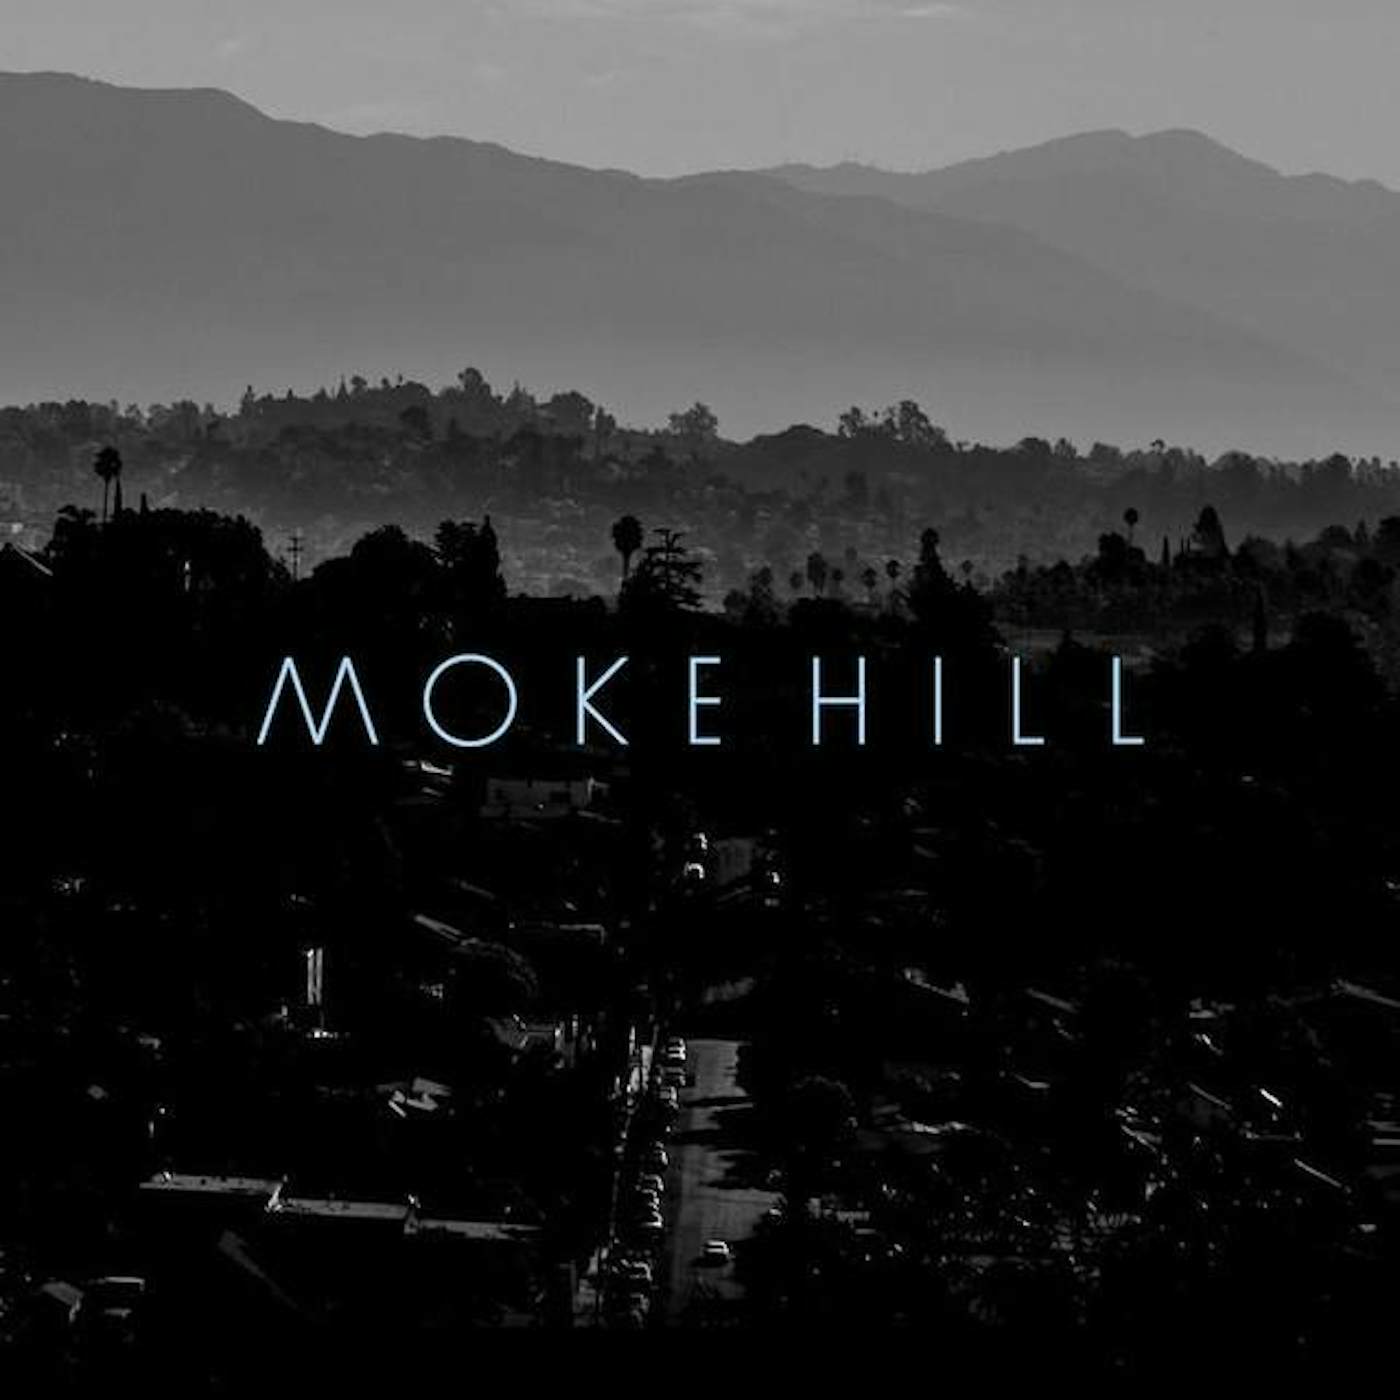 Moke Hill